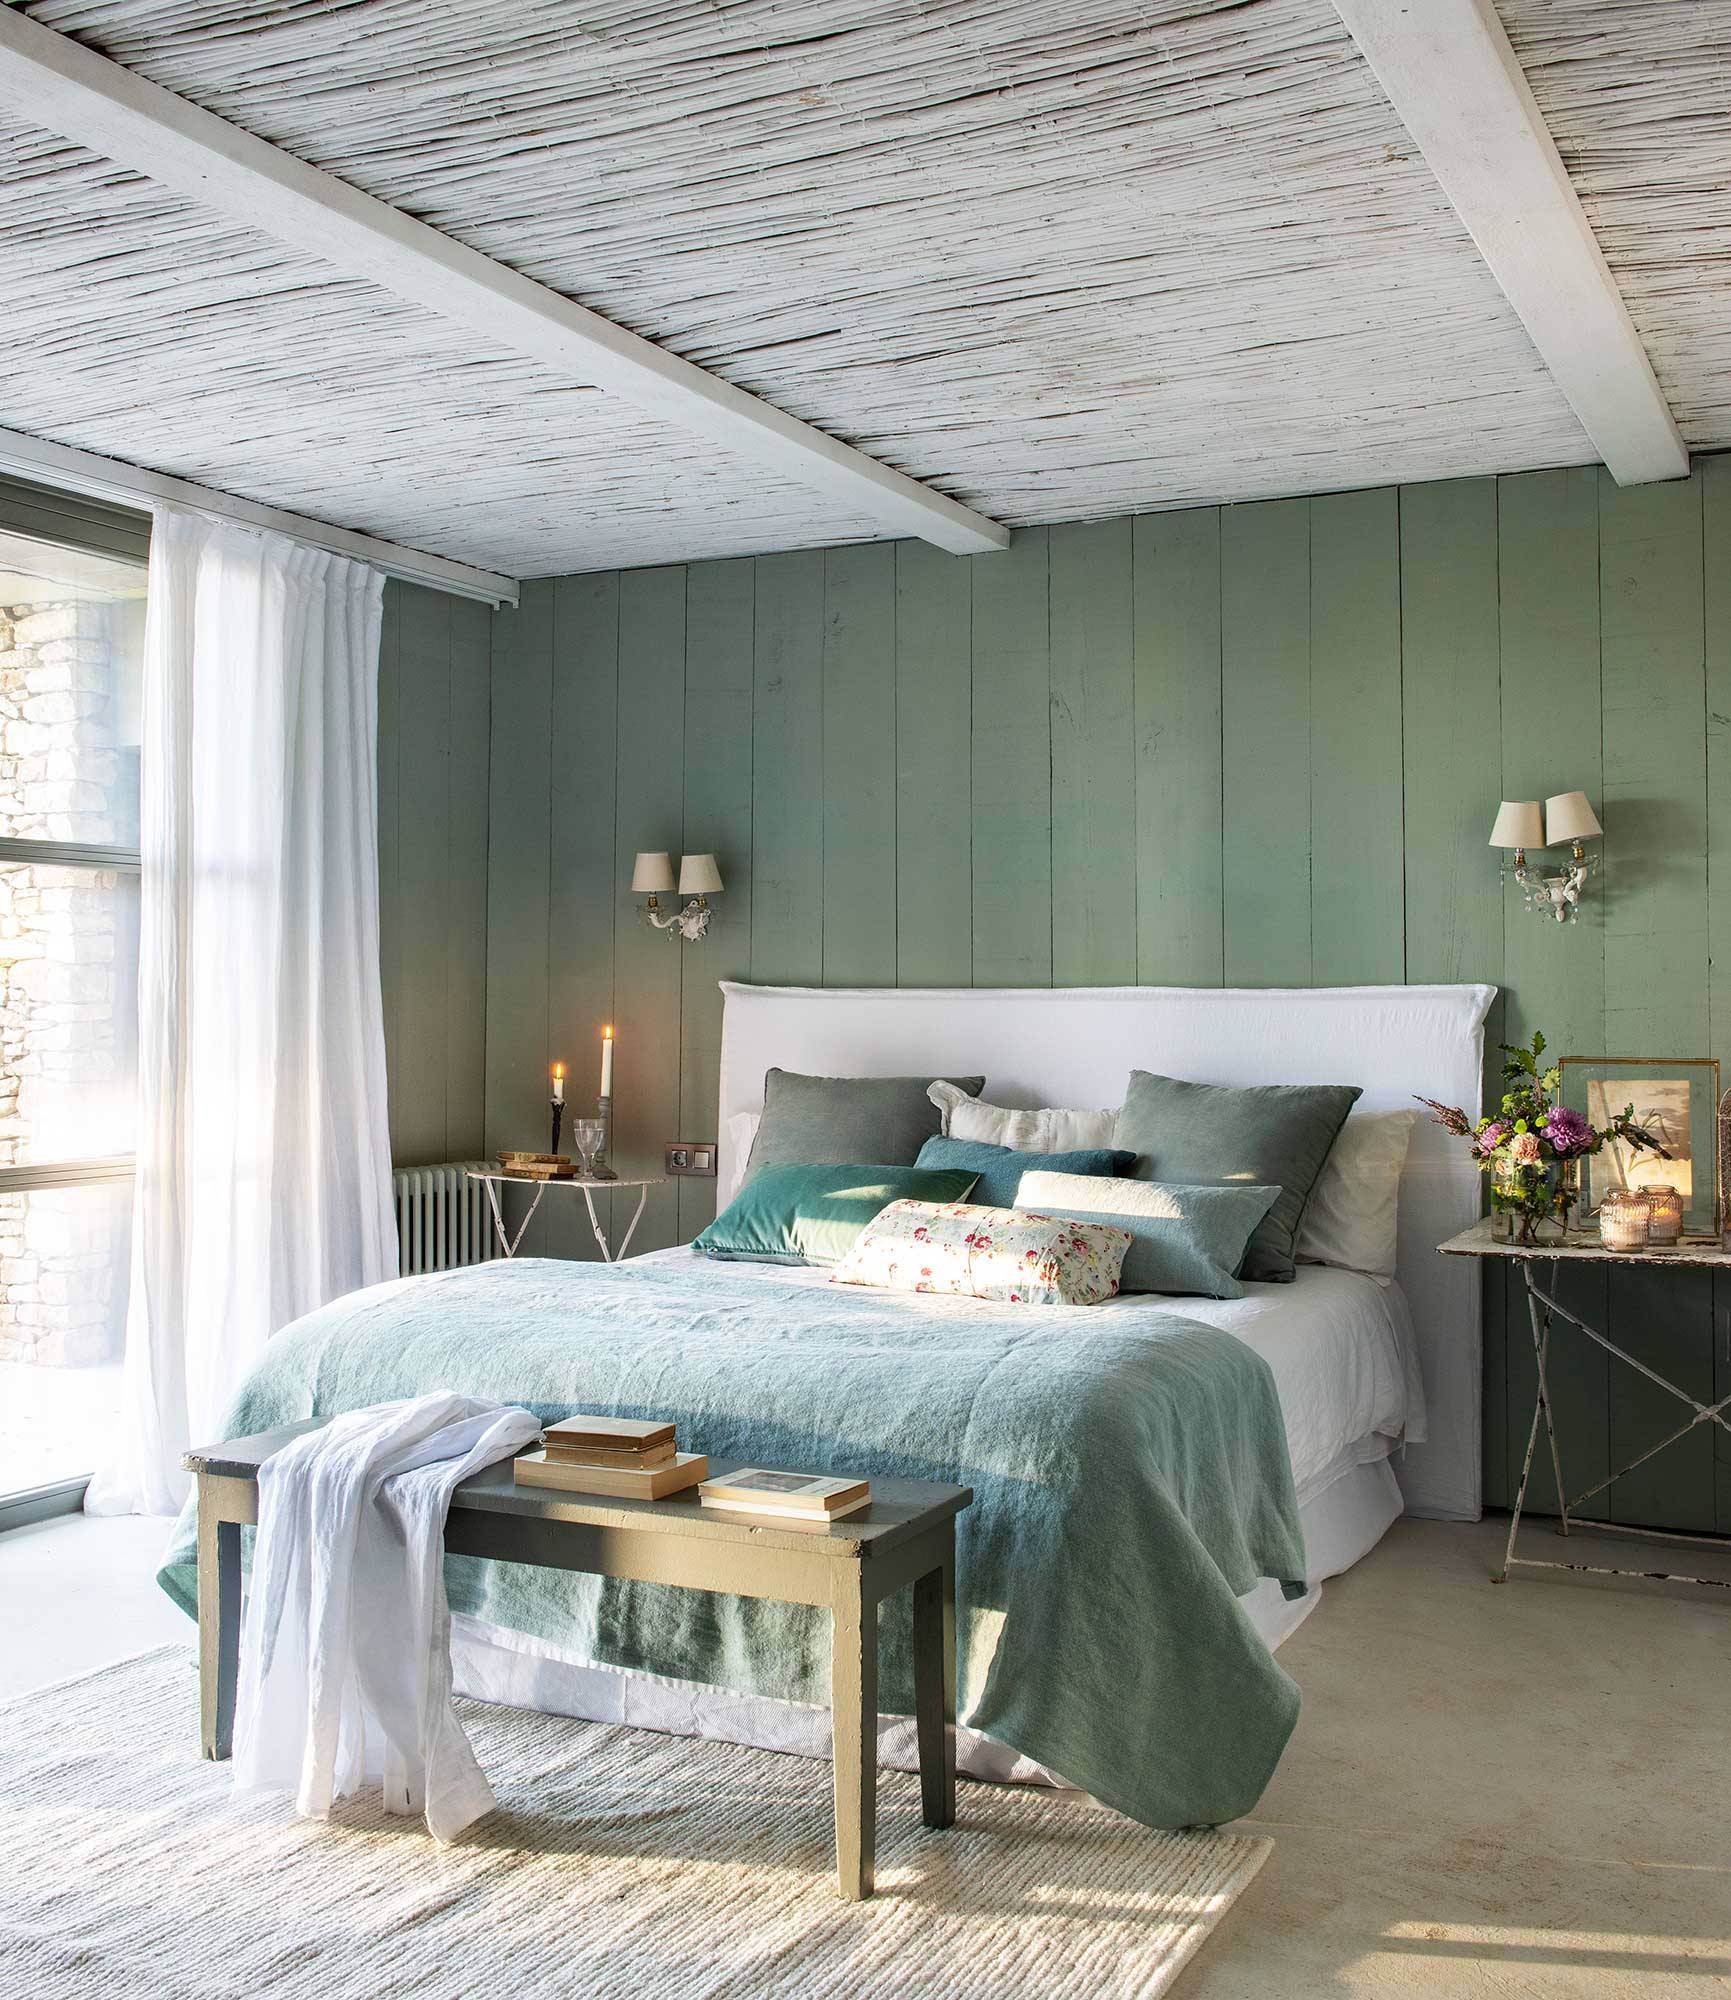 Dormitorio de campo con paredes verdes_00515305